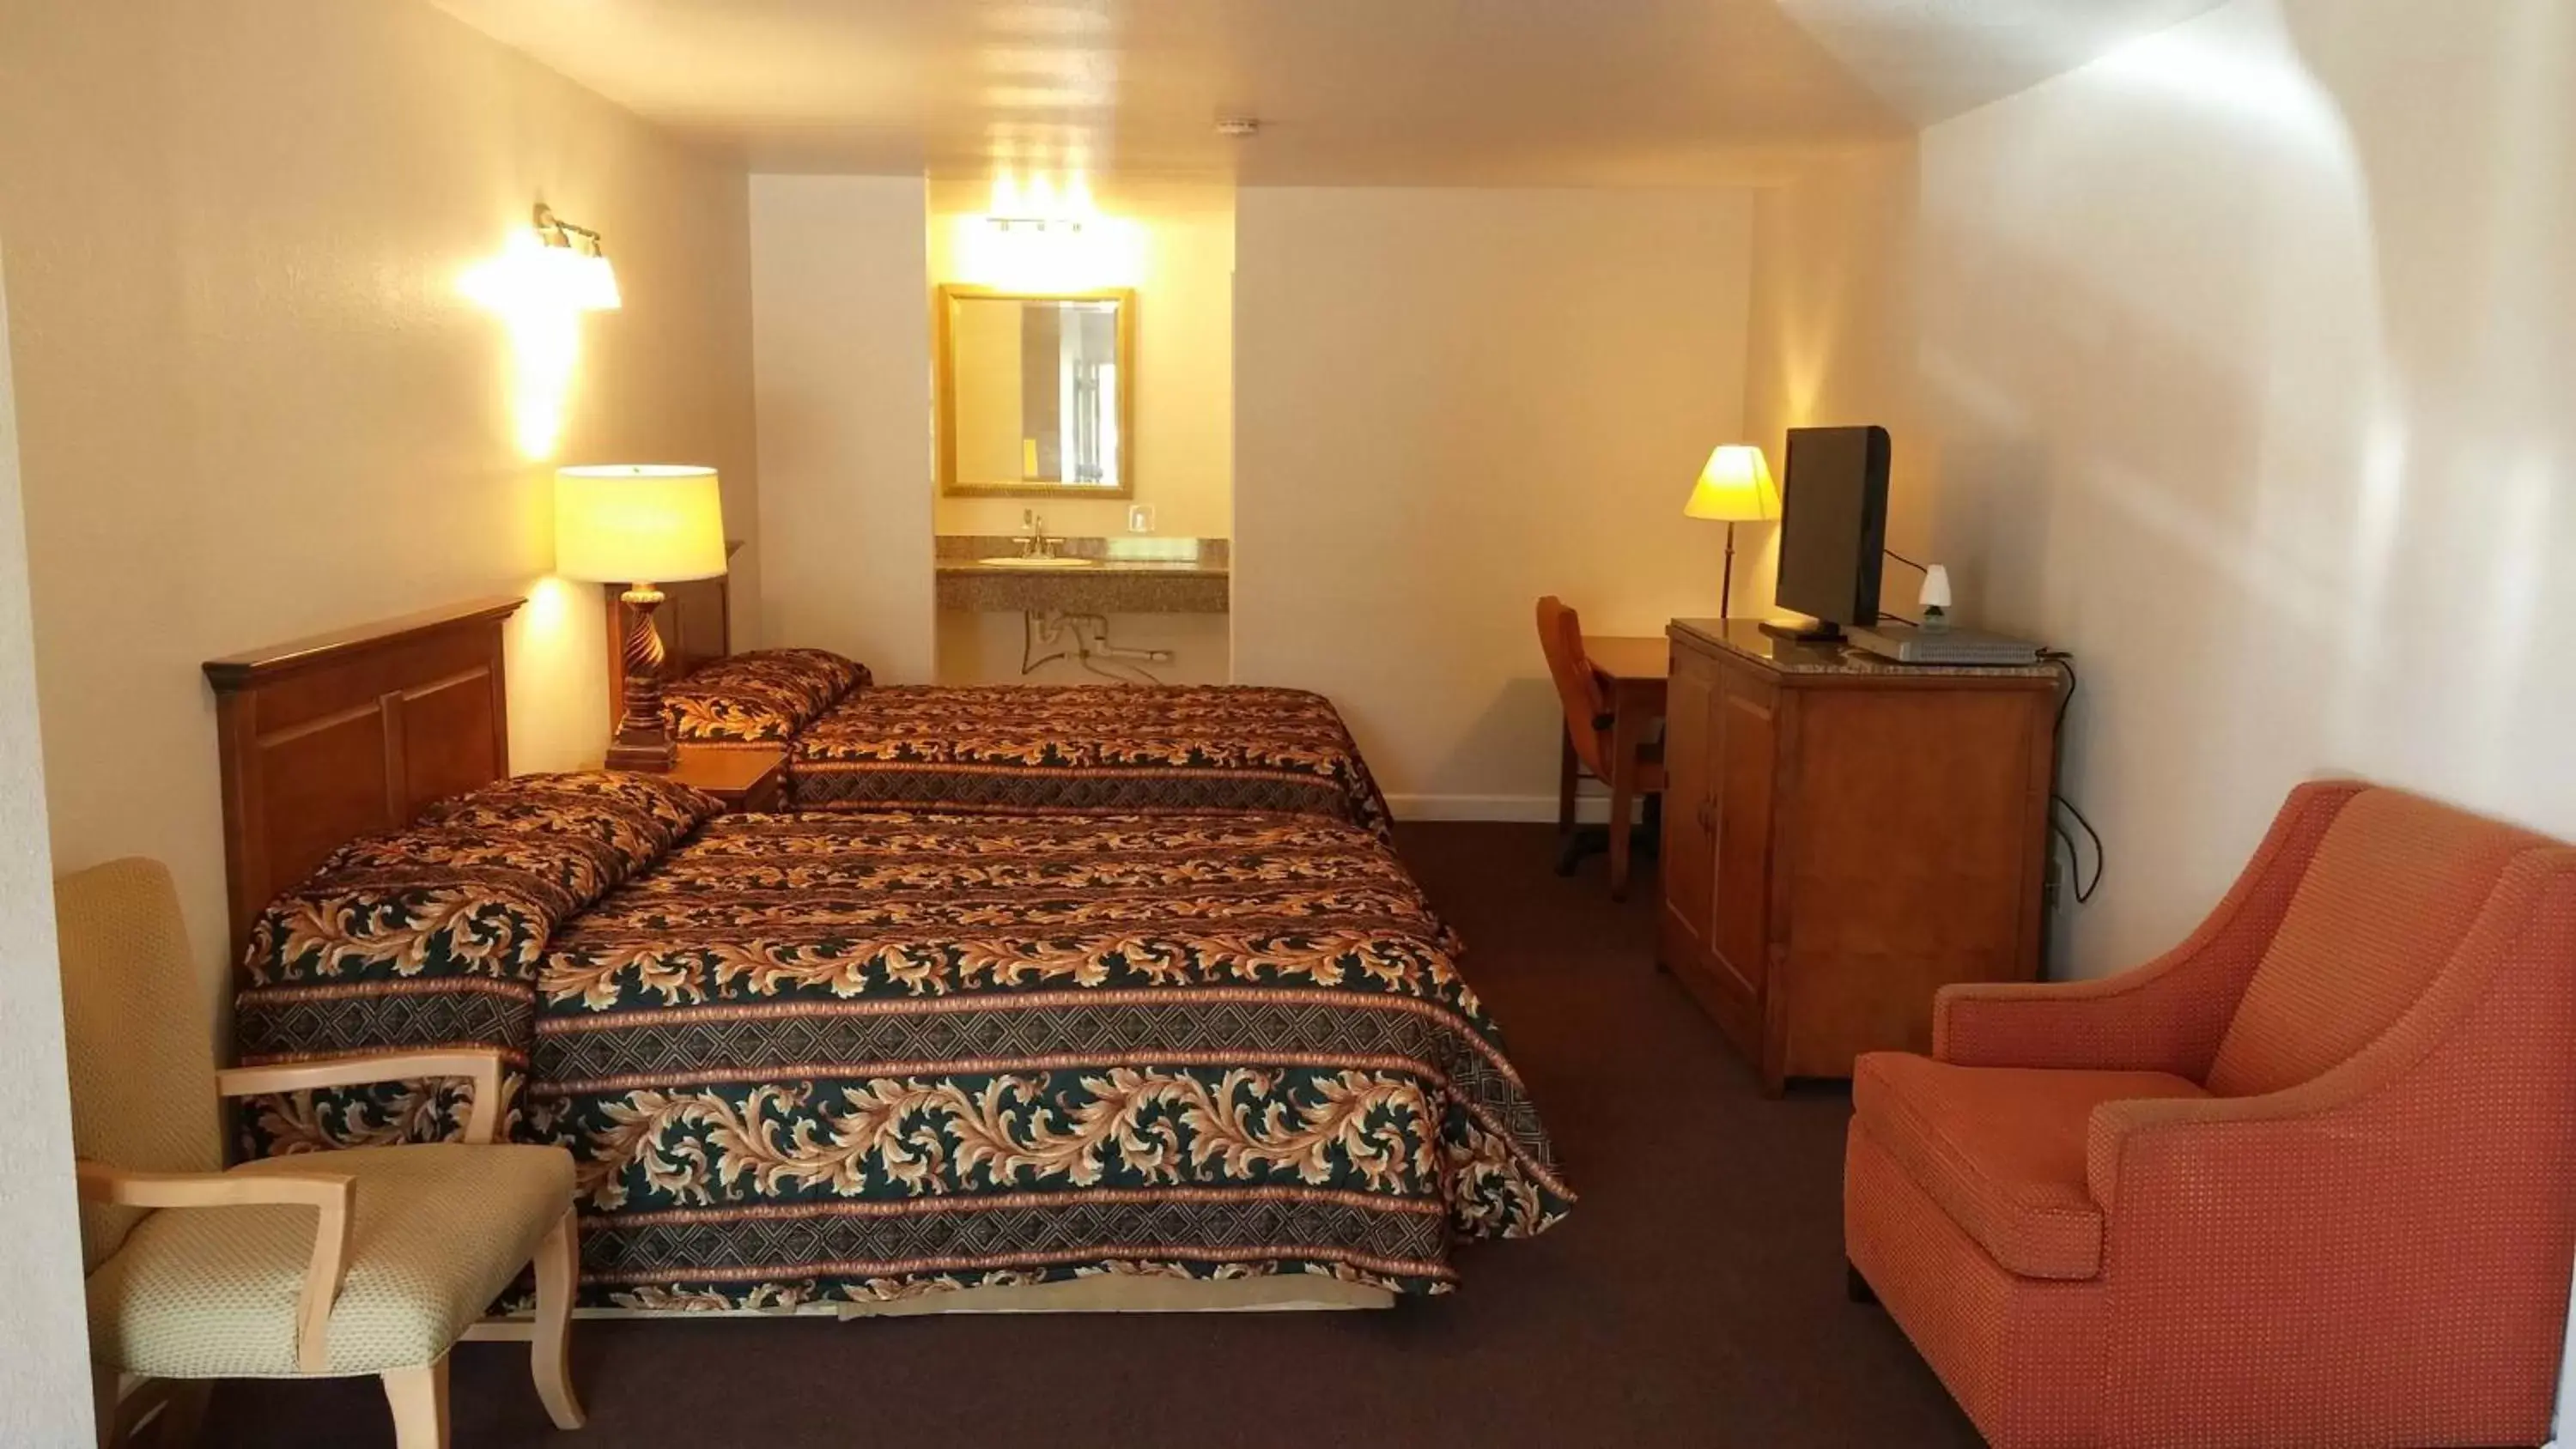 Deluxe Queen Room with Two Queen Beds in Country Regency Inn & Suites